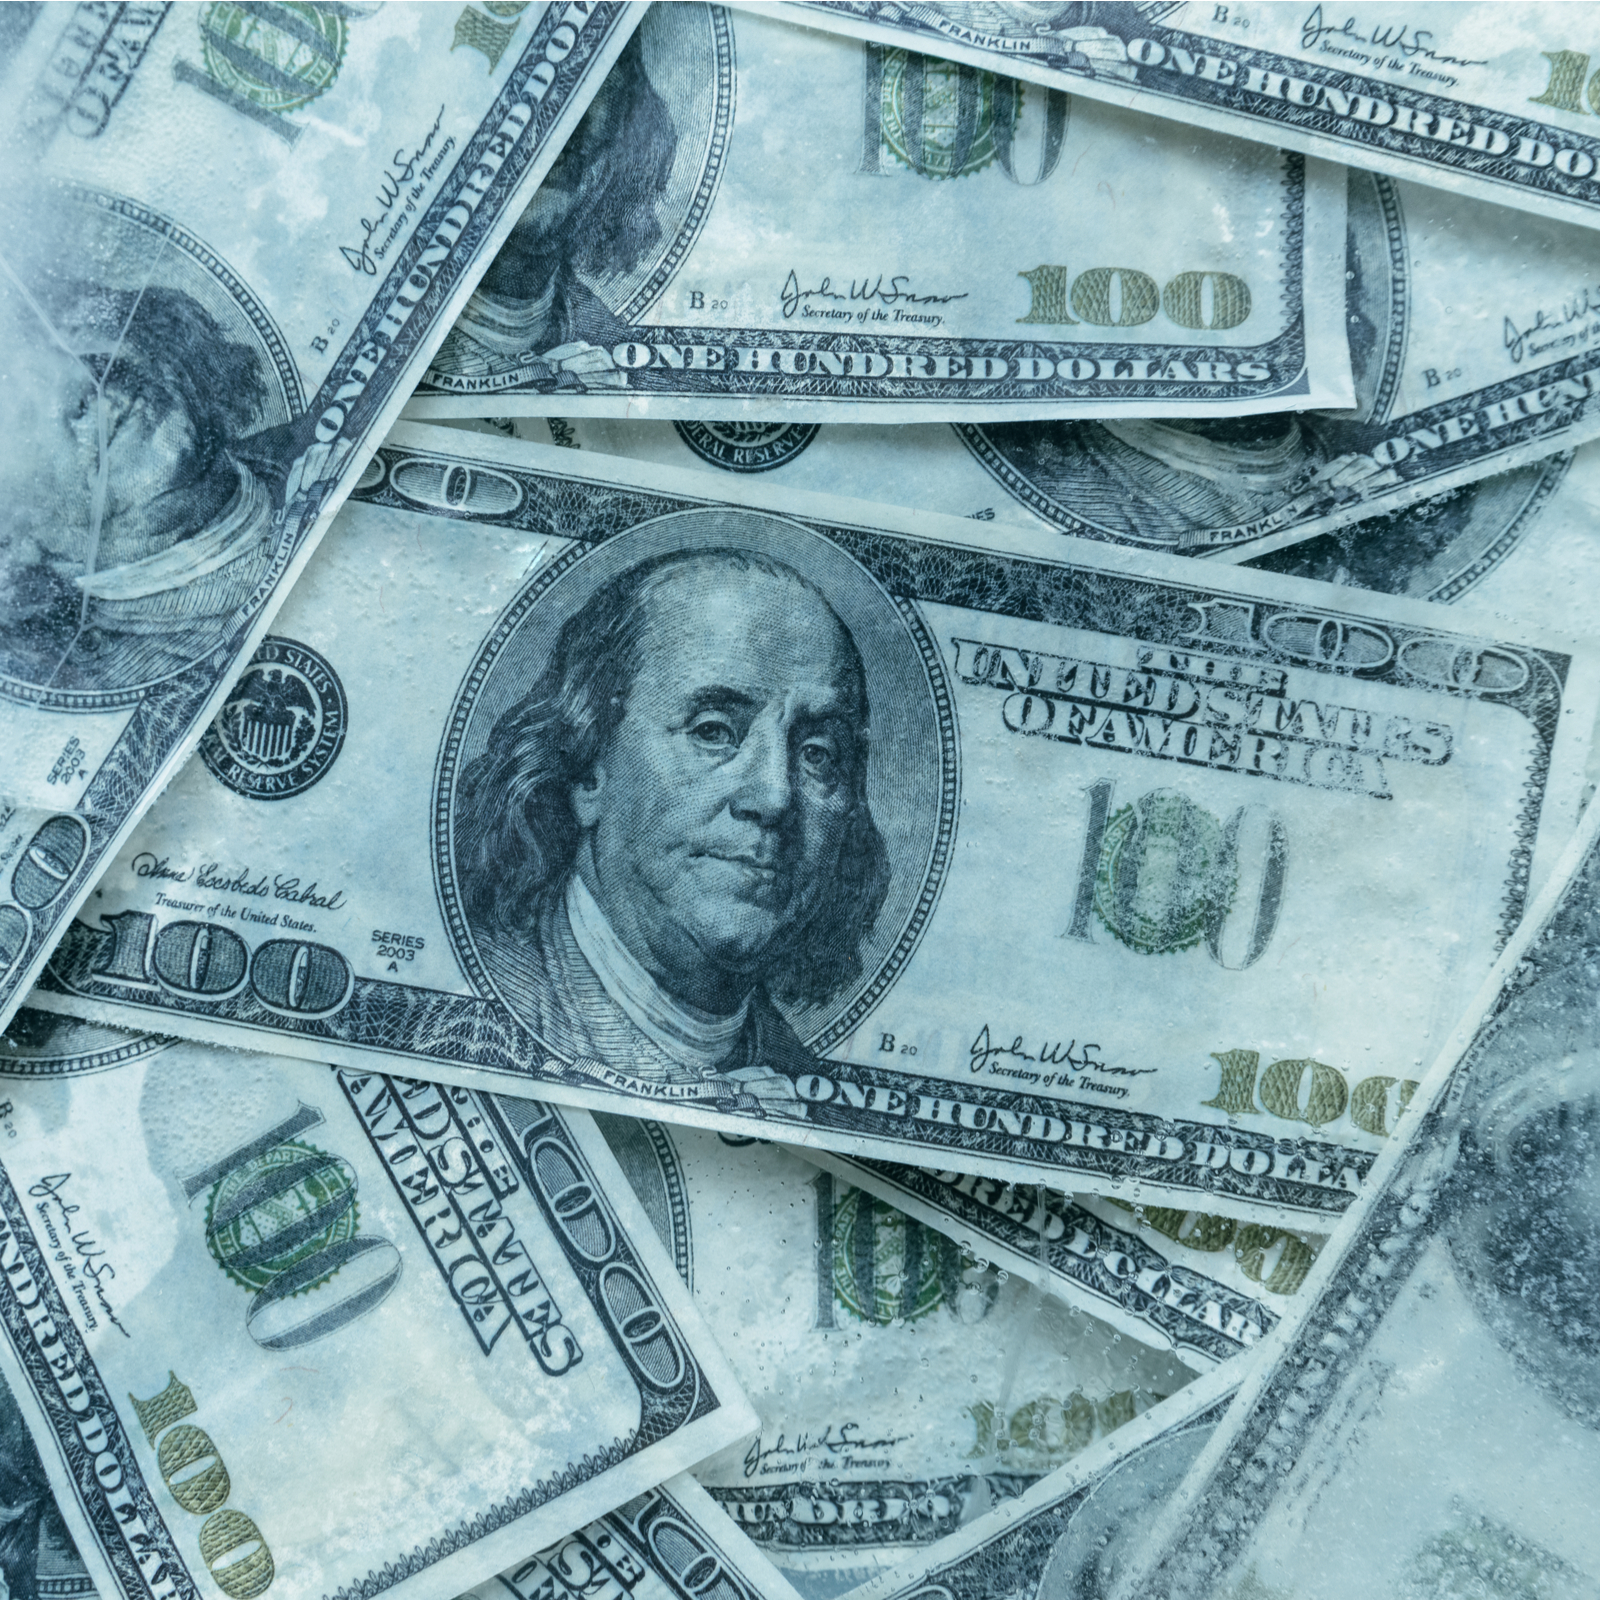 Quadrigaxc Battles Bank Over $21.6m in Frozen Funds